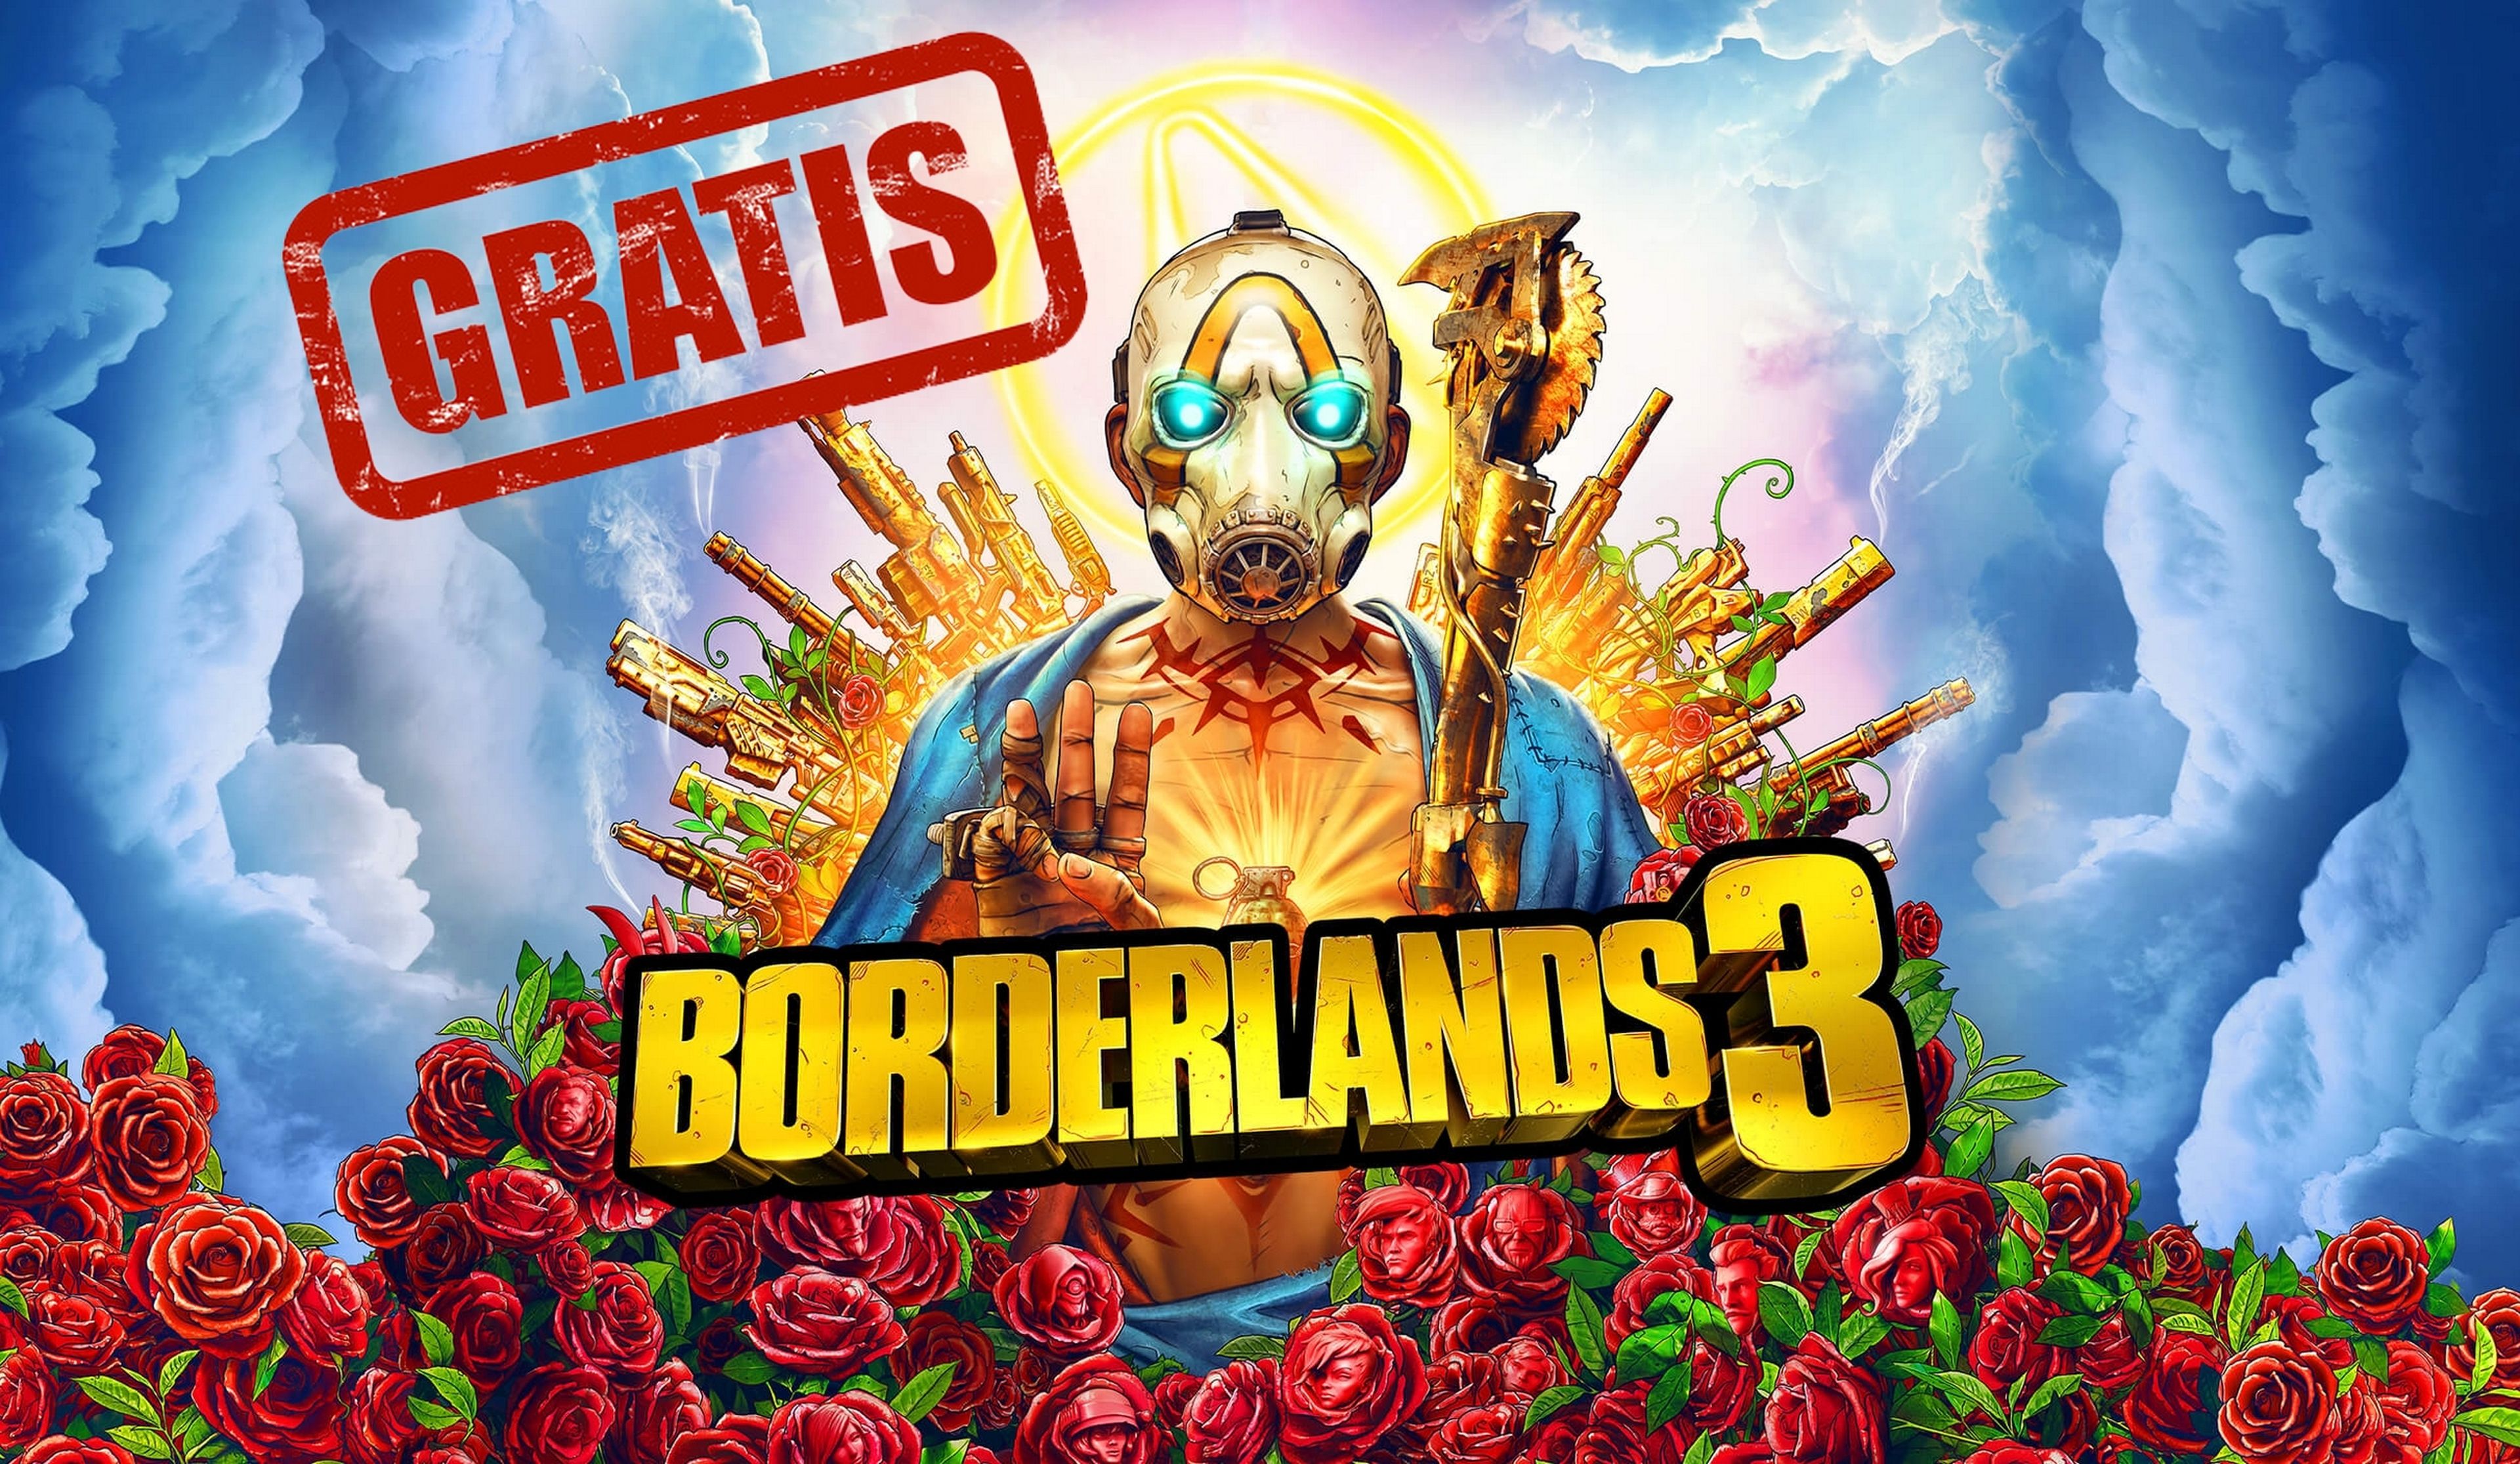 Borderlands 3 gratis, descuentos del 75% y cupón del 25% adicional ilimitado en las rebajas de Epic Games Store